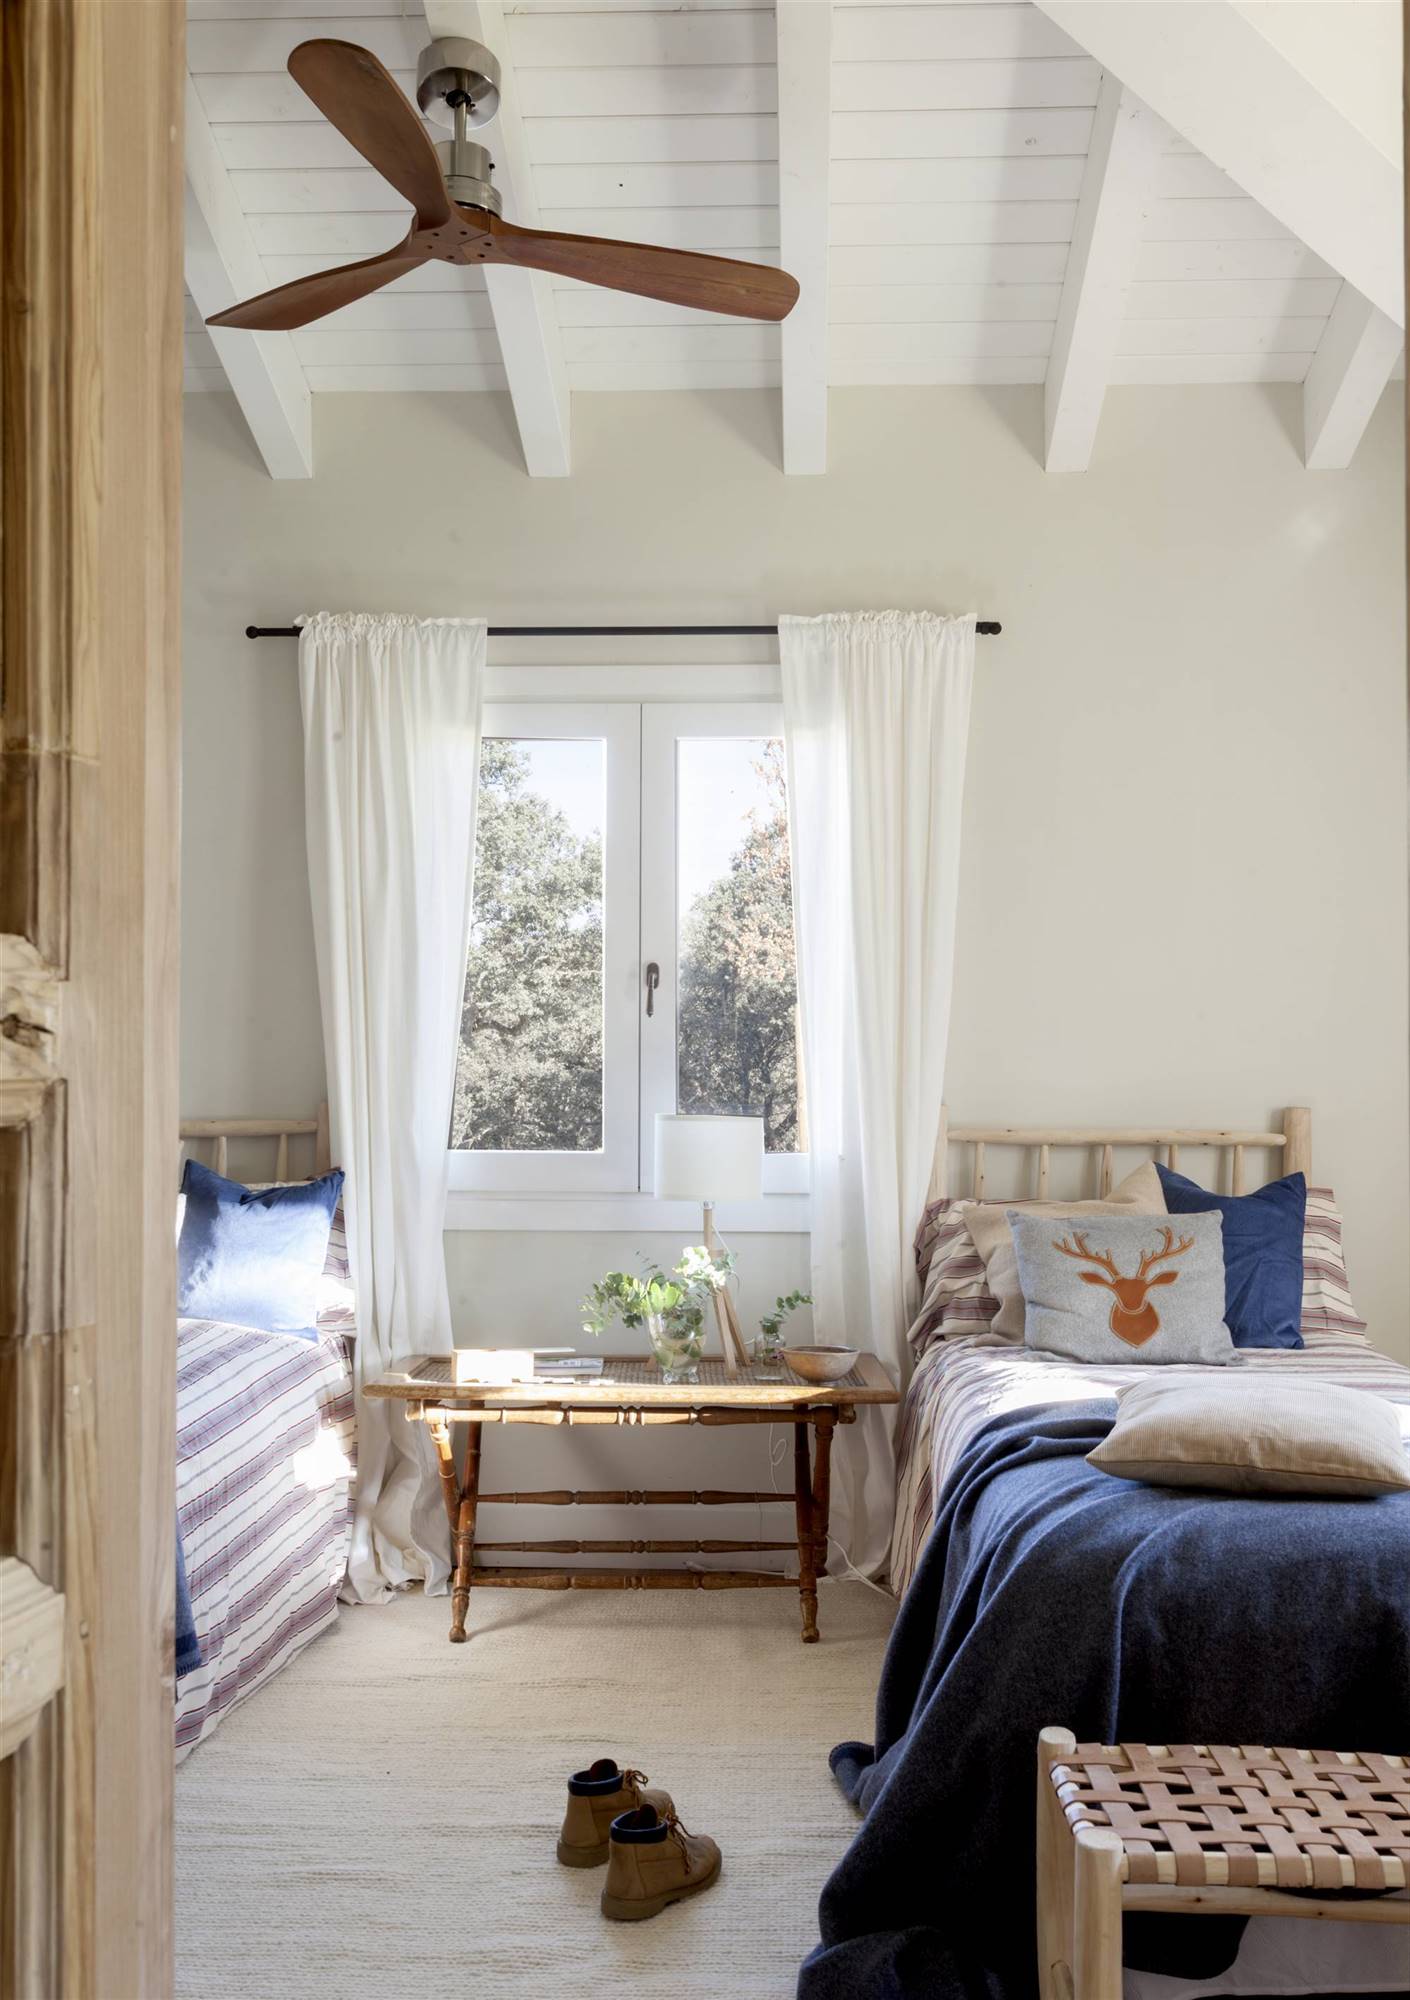 Habitación infatil pequeña con dos camas adosadas a las paredes con una ventana en medio